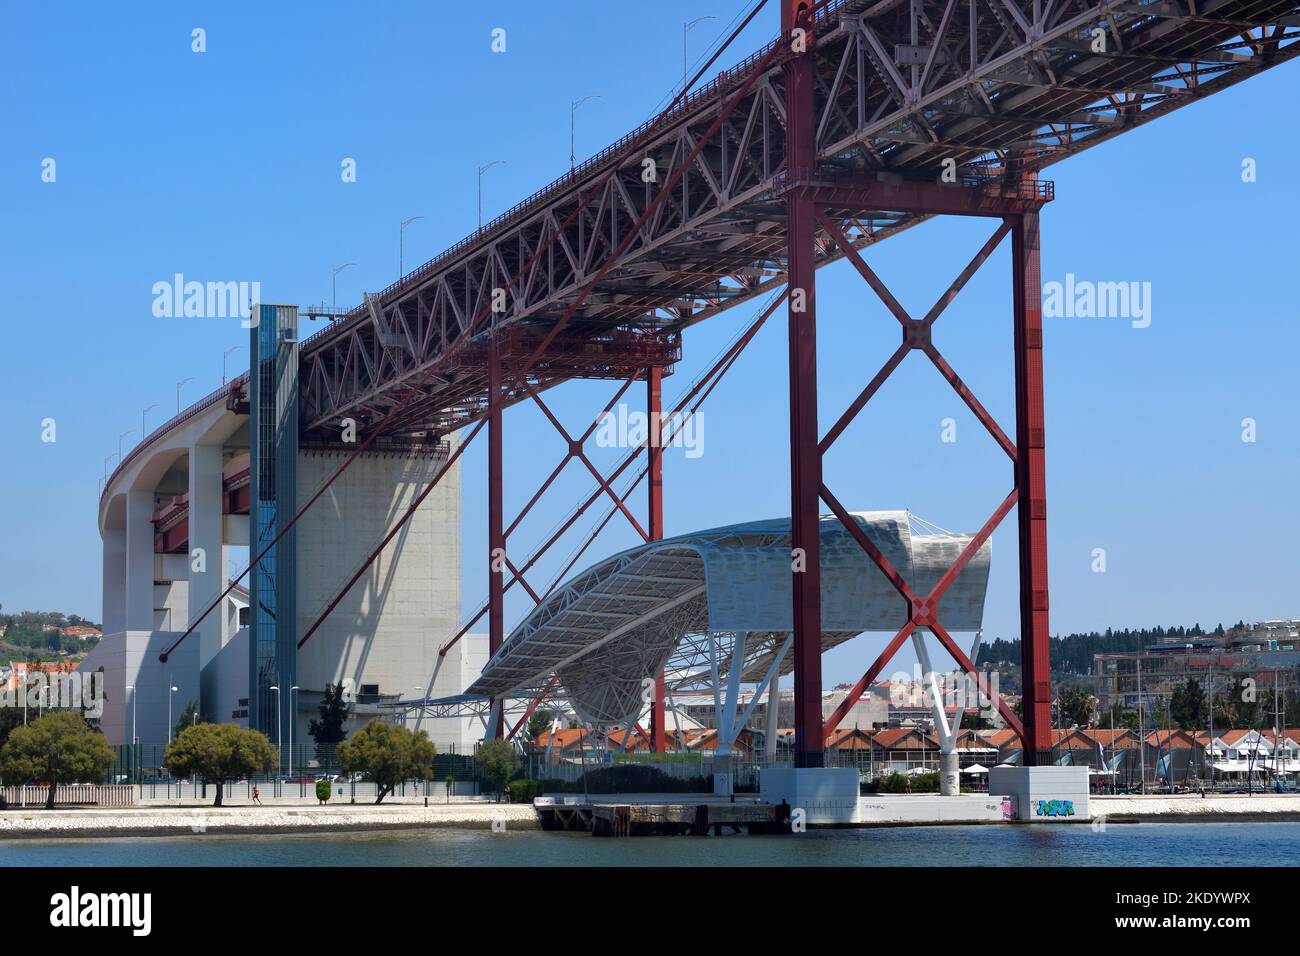 25 avril pont suspendu sur le Tage, Lisbonne, Portugal Banque D'Images